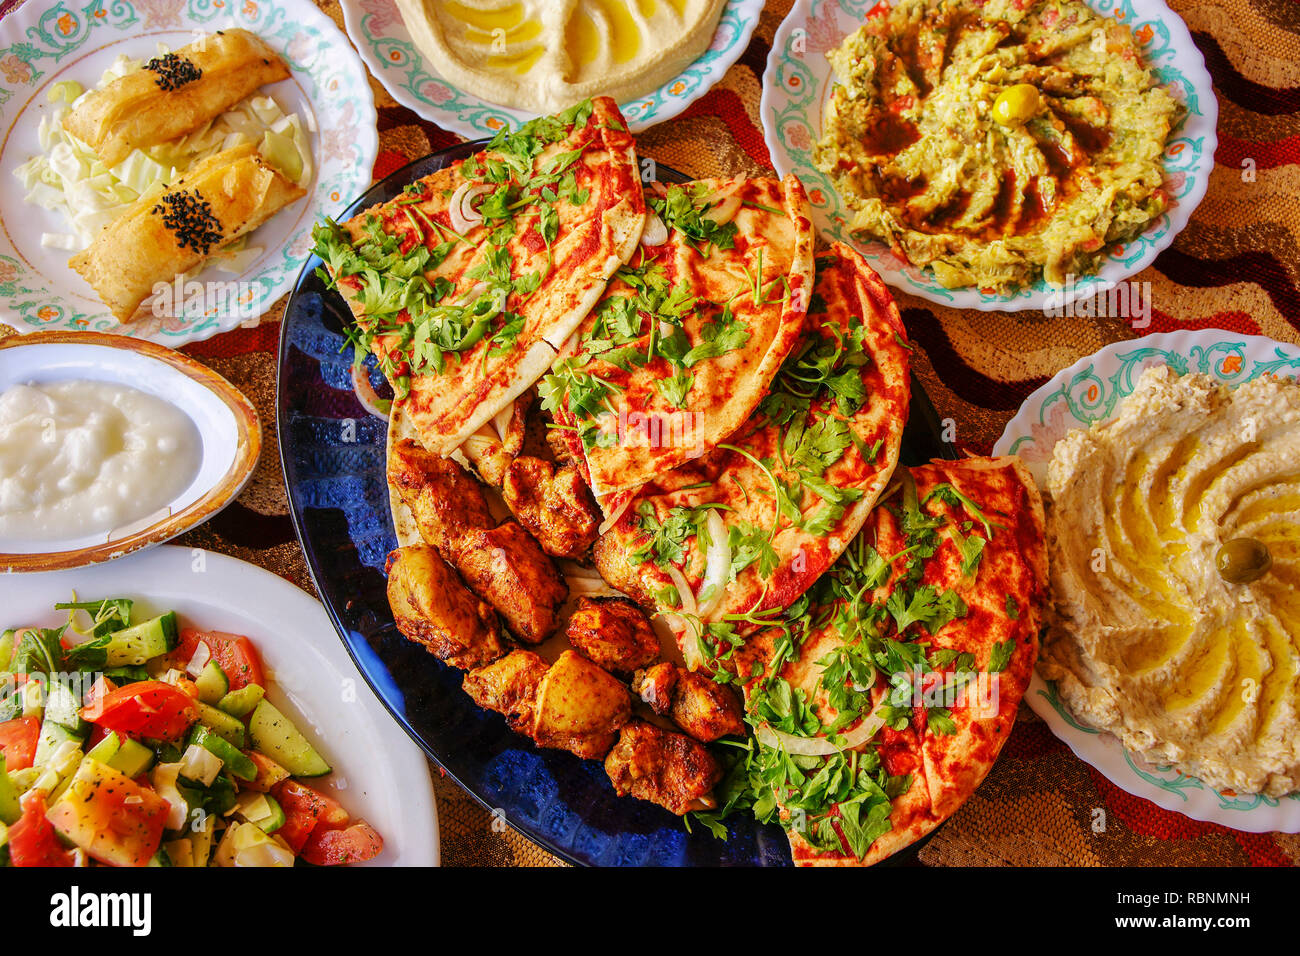 République Arabe de la nourriture. Chiken kebab, hoummos, meze salades. La Syrie, au Moyen-Orient Banque D'Images